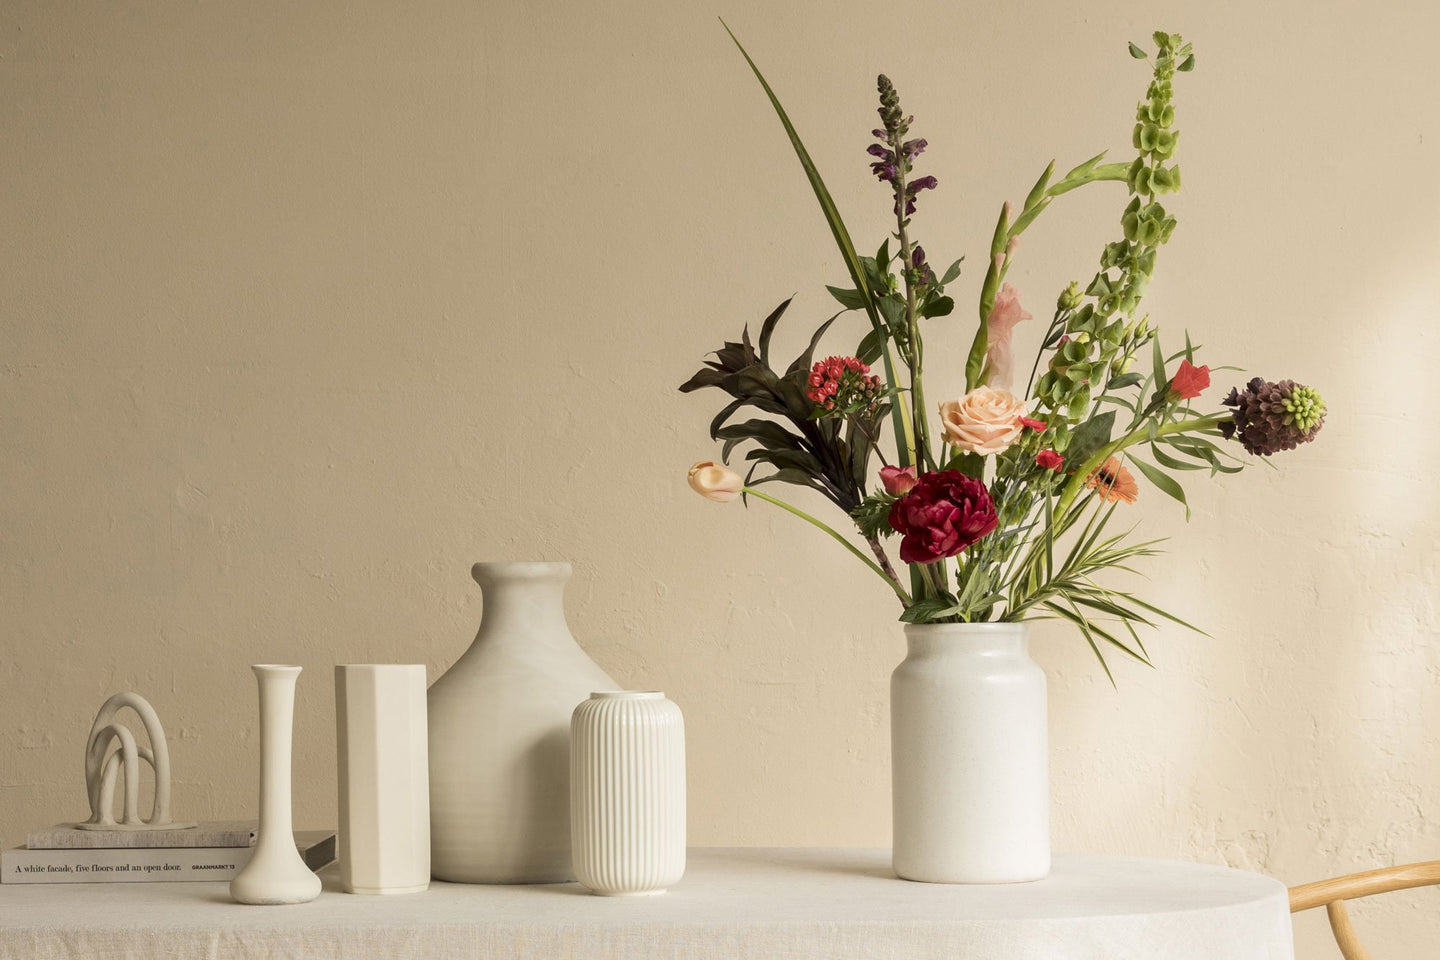 Blumen-Projekte: Vasen auswählen und verschönern